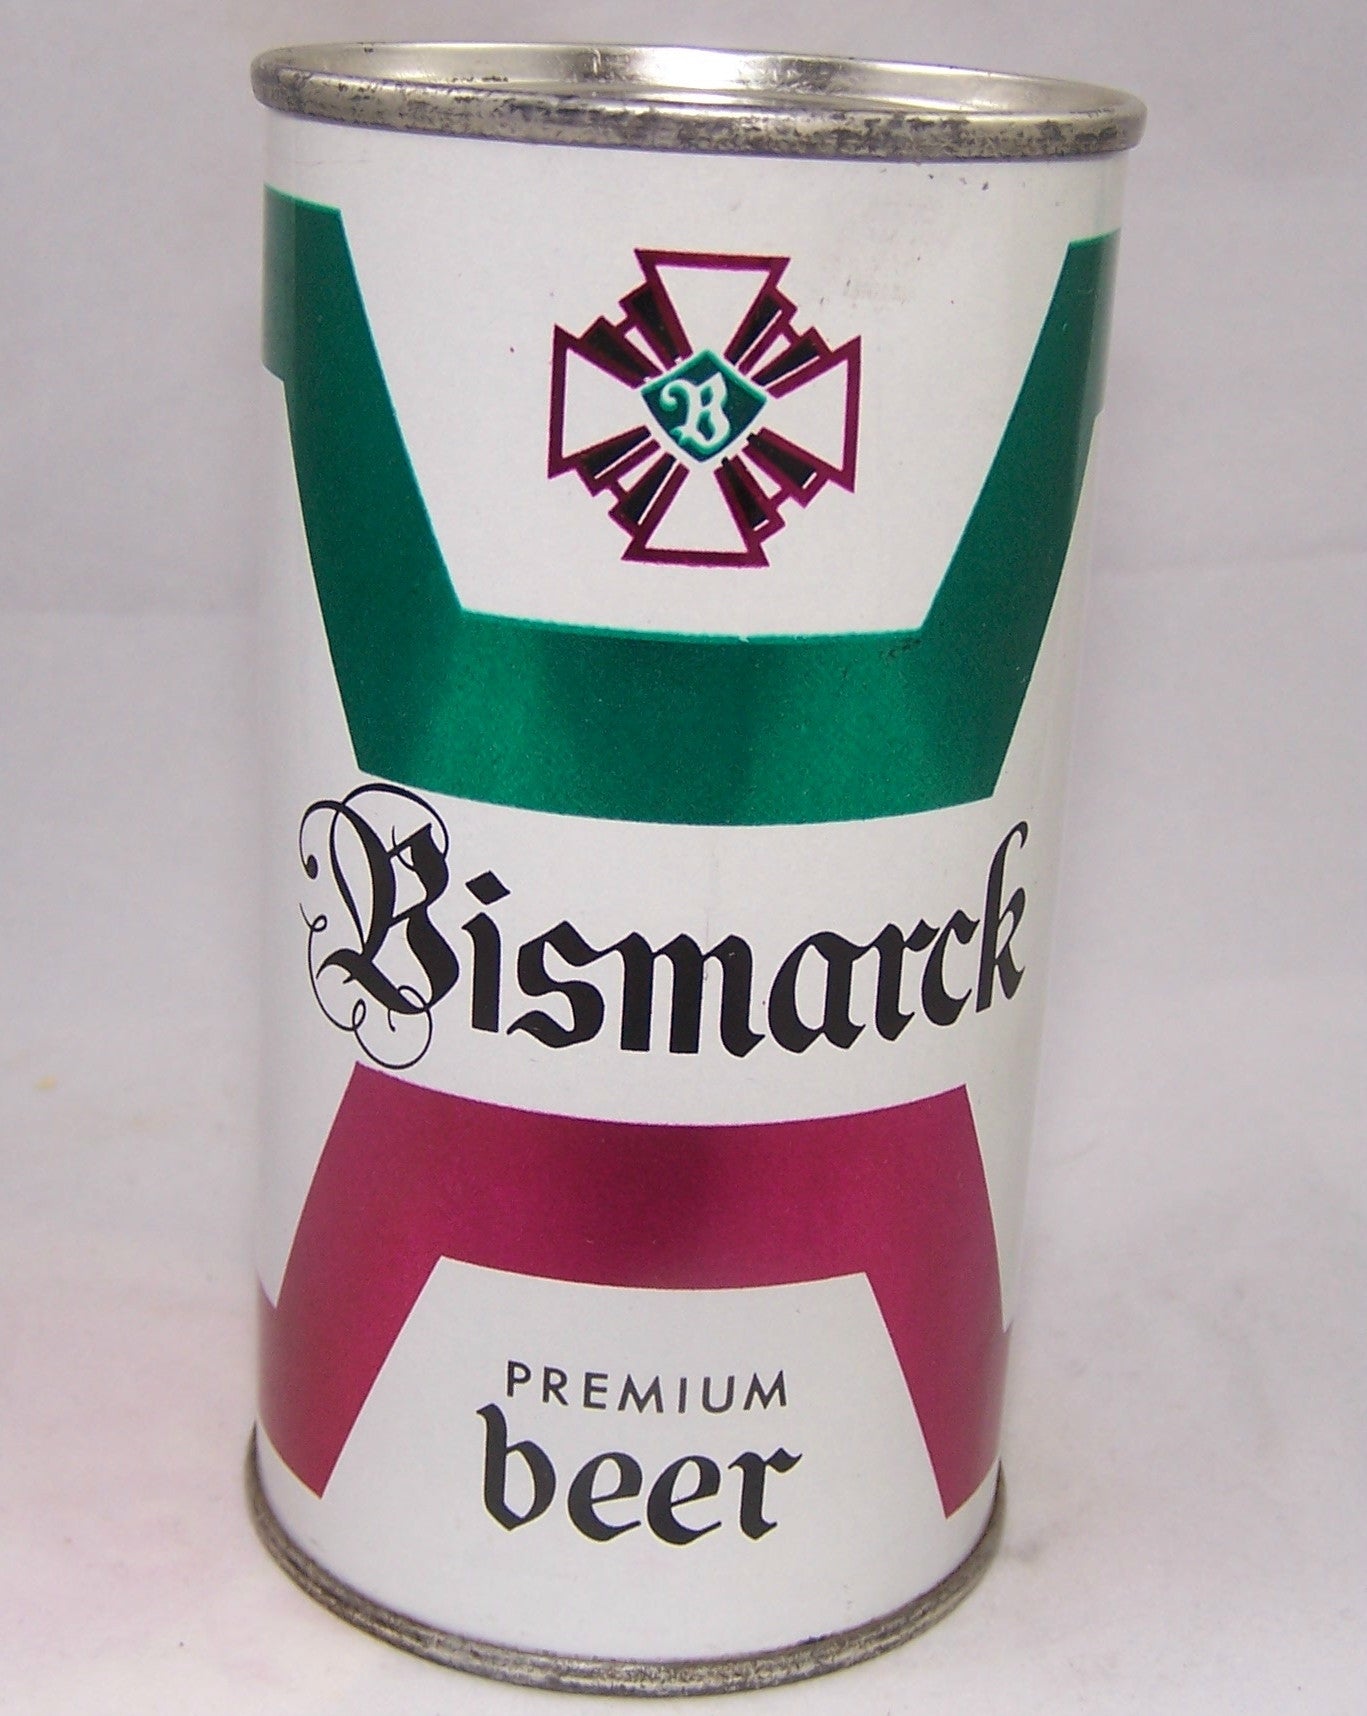 Bismarck Premium Beer, USBC 37-14, Grade A1+ Sold on 07/18/16